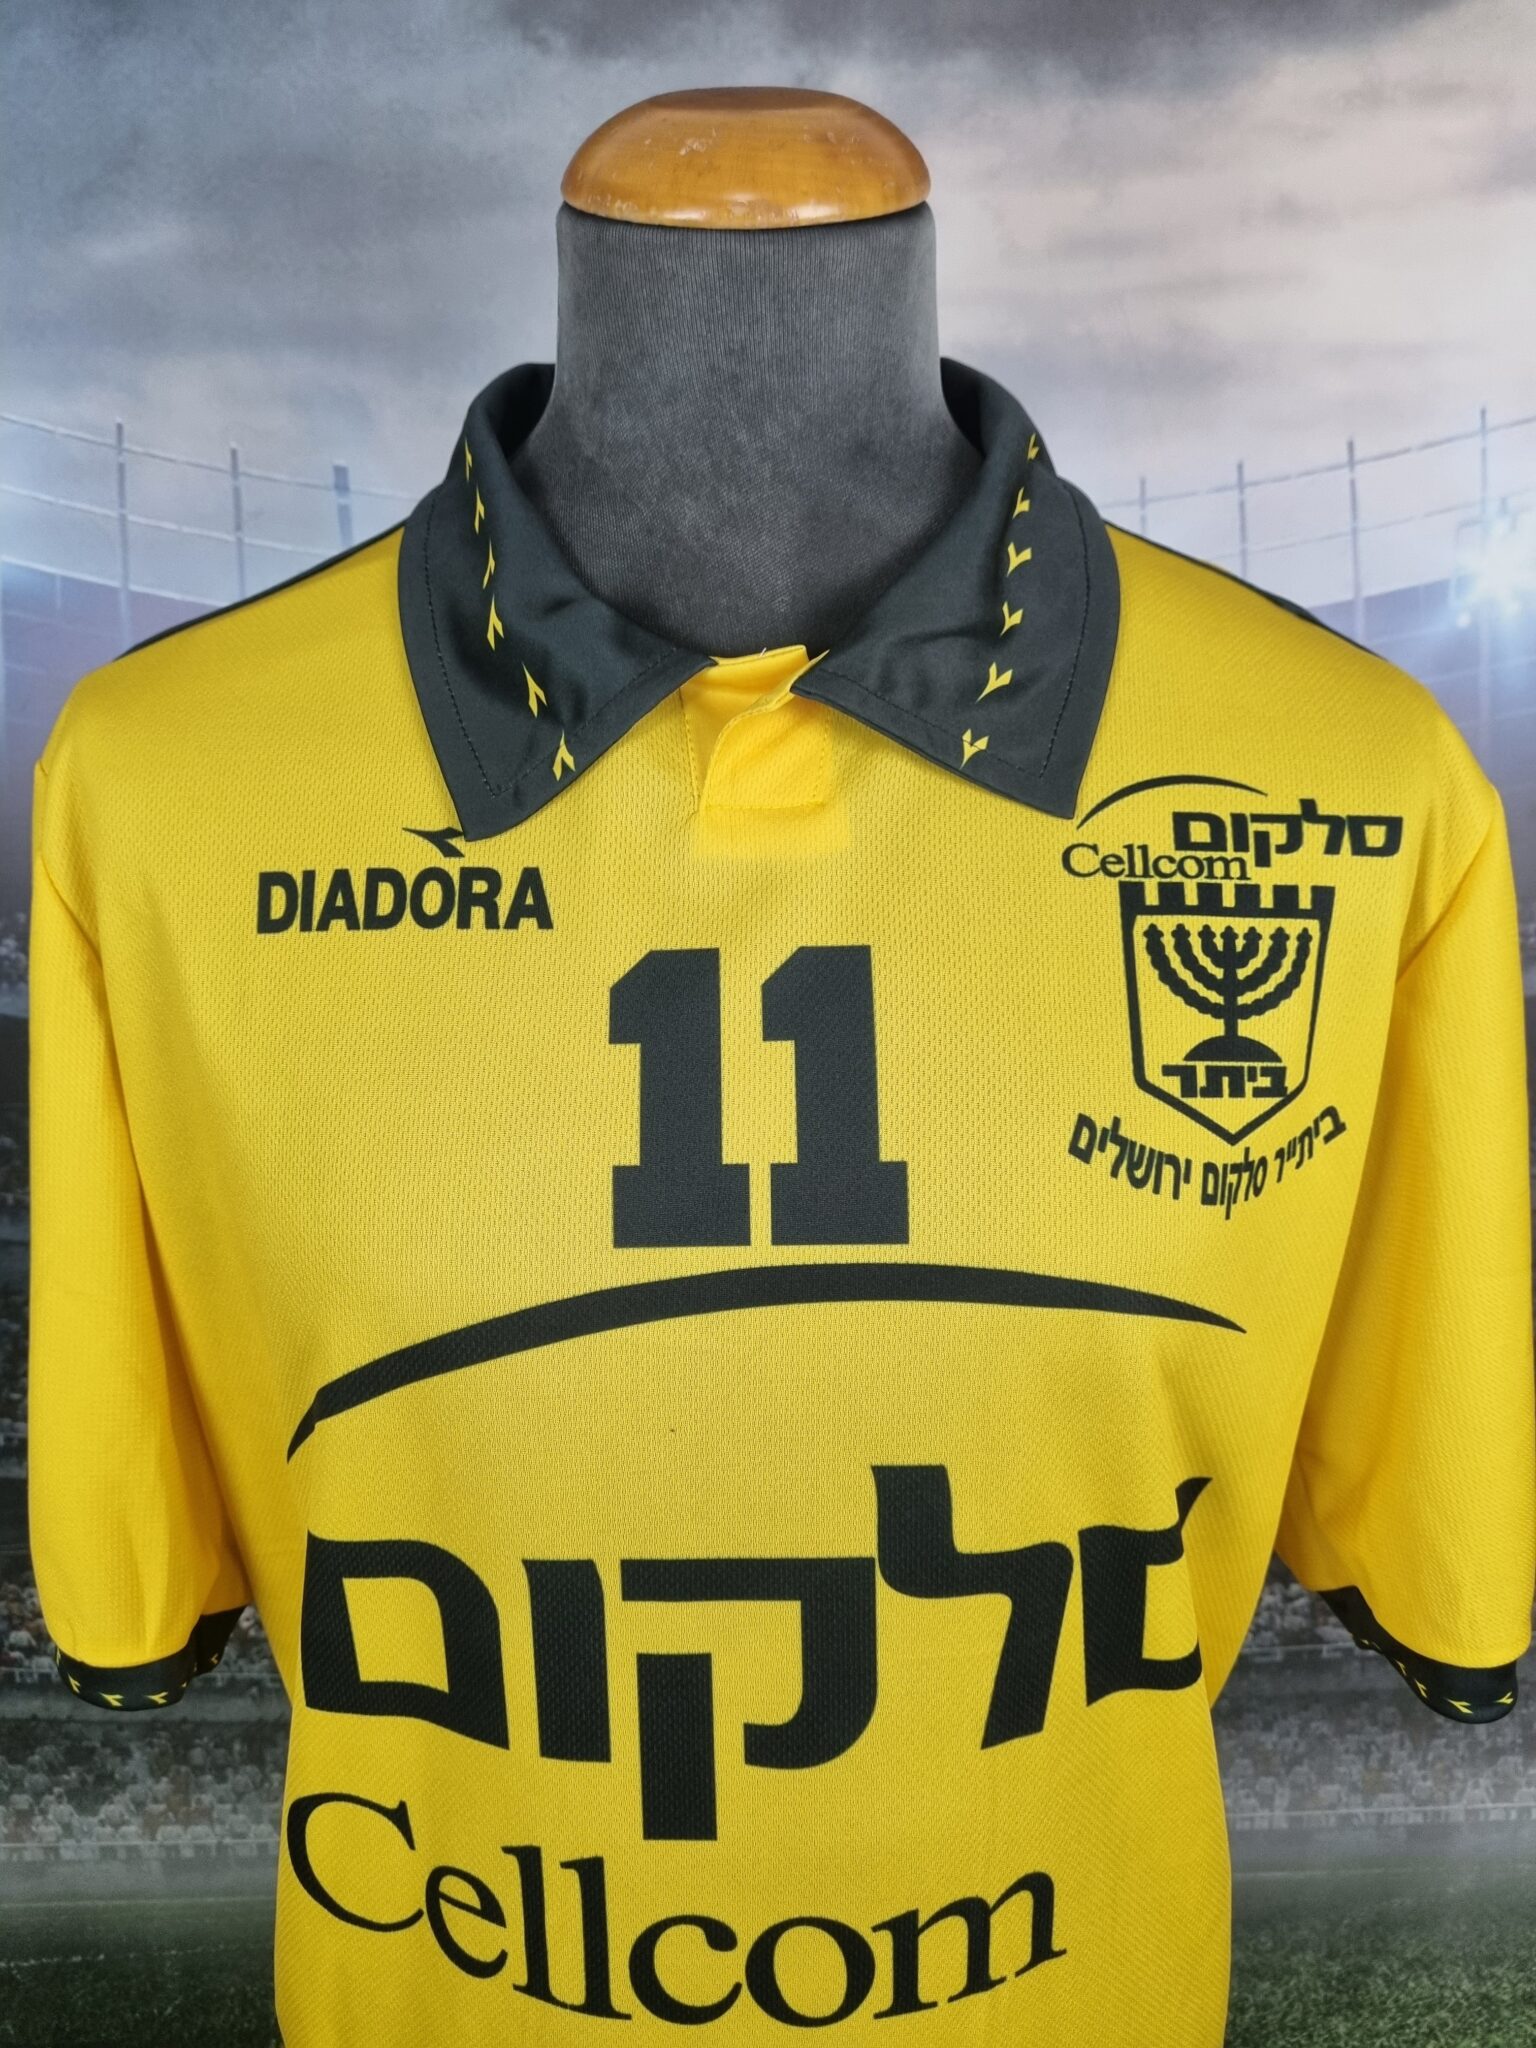 Beitar Jerusalem Football Jersey 1997/1998 Retro ביתר ירושלים : The Menorah - Sport Club Memories